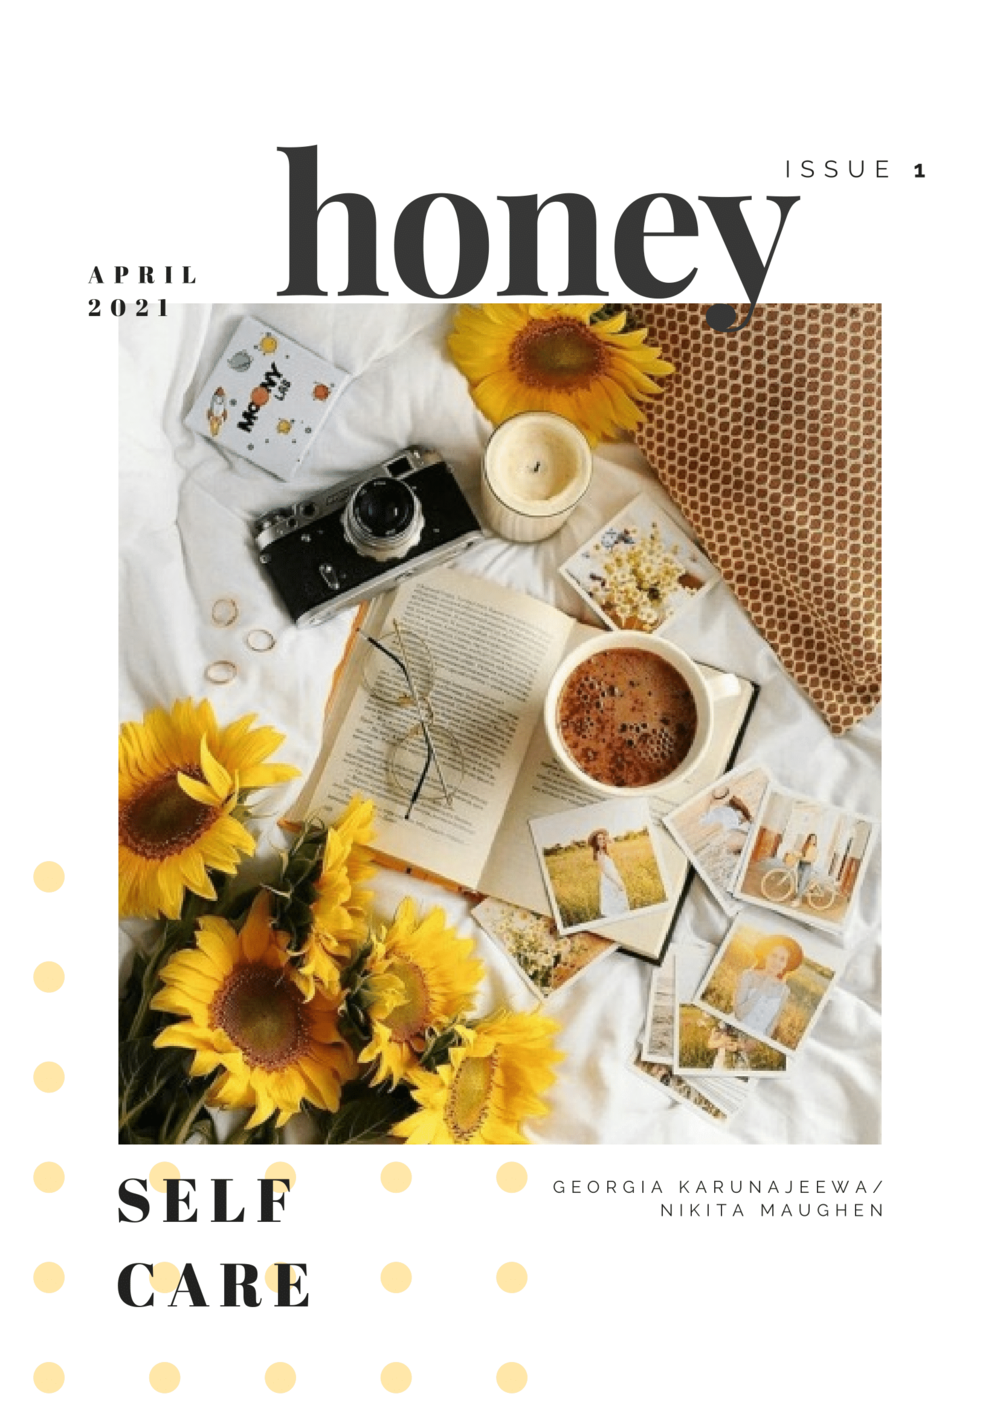 Year 9 Magazine: Honey